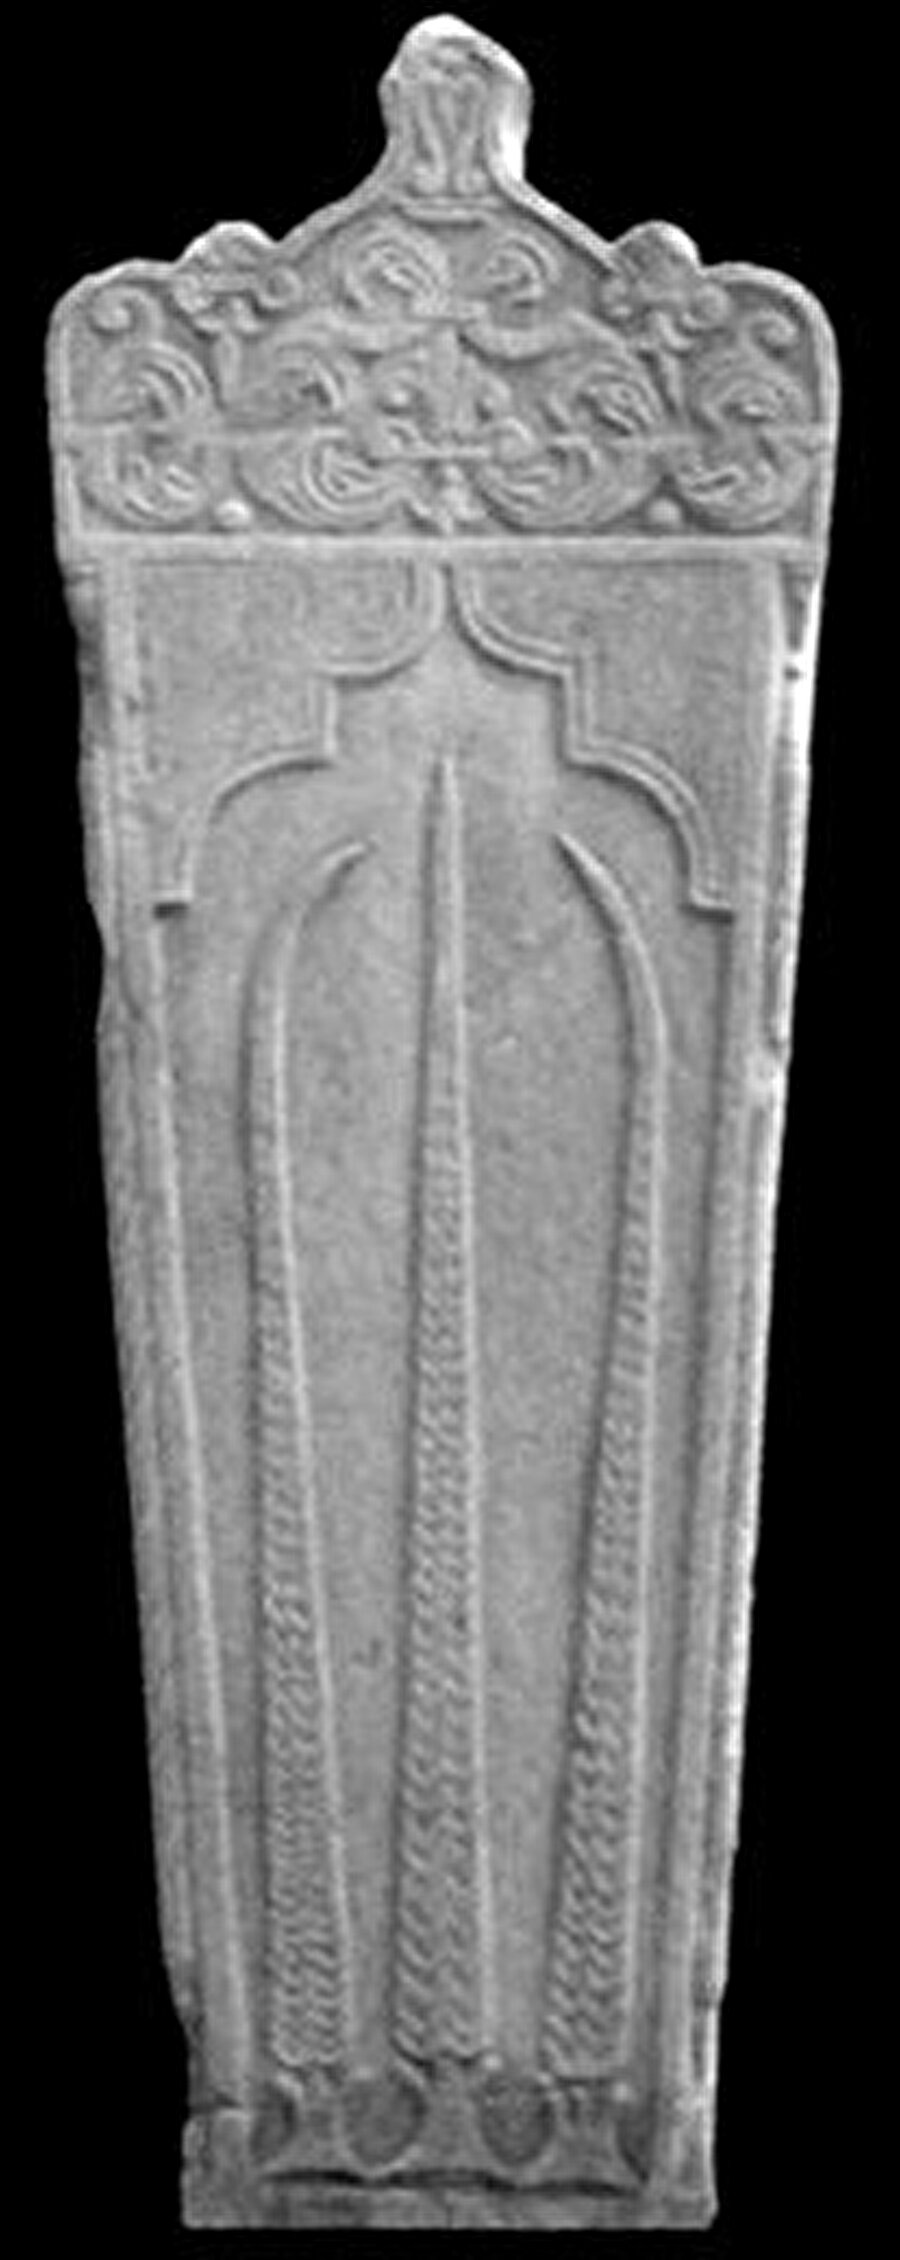 Servi içinde servi motifi
Mezar taşı üzerindeki servi içinde servi motifi, doğumda ölen kadını ve doğurduğu kız çocuğunu temsil etmektedir.